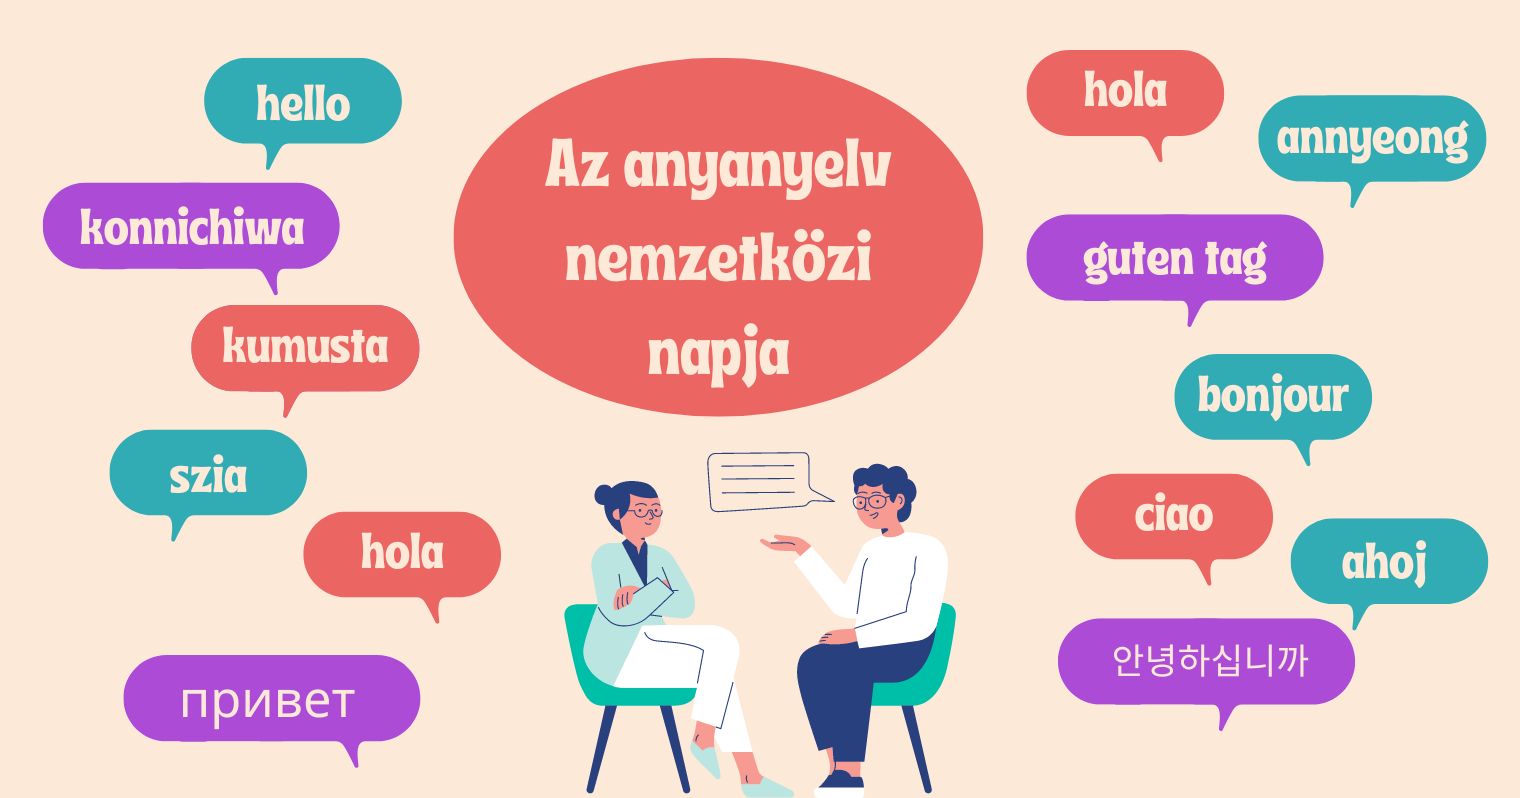 Két ülő alak grafikája, körülöttük különféle nyelvek köszönései és a cikk címe: Az anyanyelv nemzetközi napja.